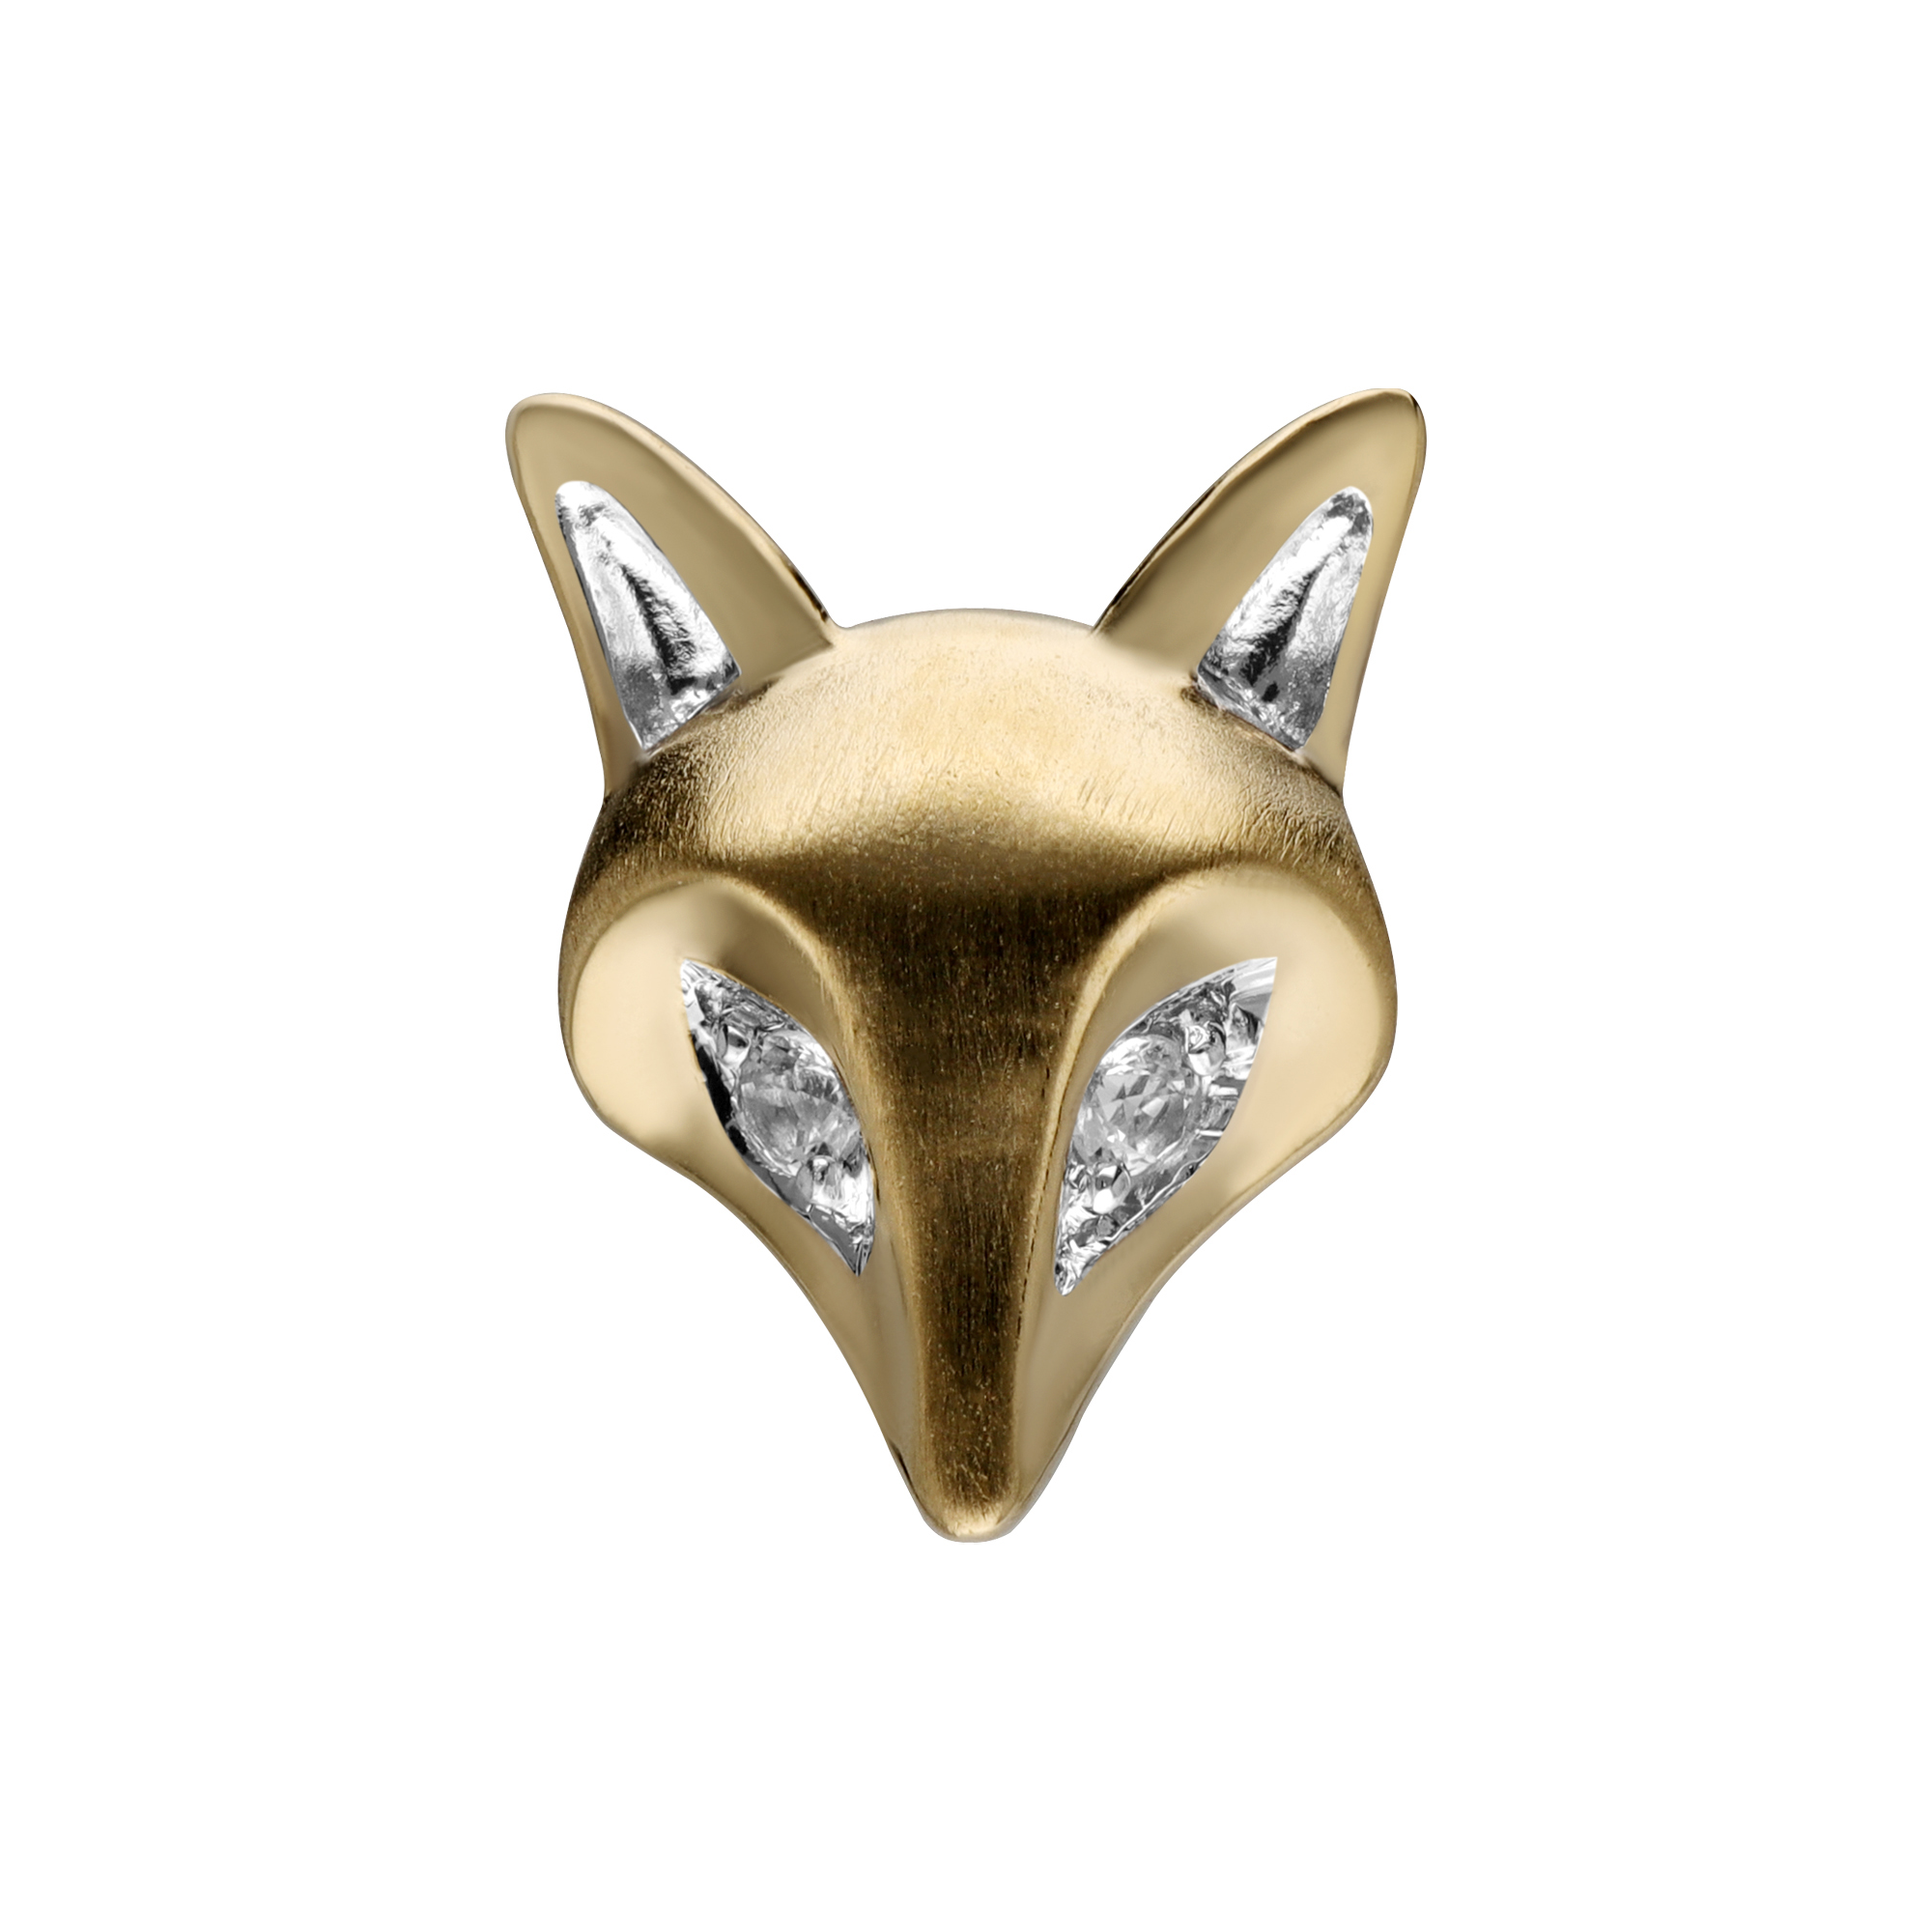 Gemondo เข็มกลัดทองคำแท้ 9K รูปสุนัขจิ้งจอกประดับไพลิน (White Sapphire) : เข็มกลัดทอง เข็มกลัดทองคำ เข็มกลัดทองคำแท้